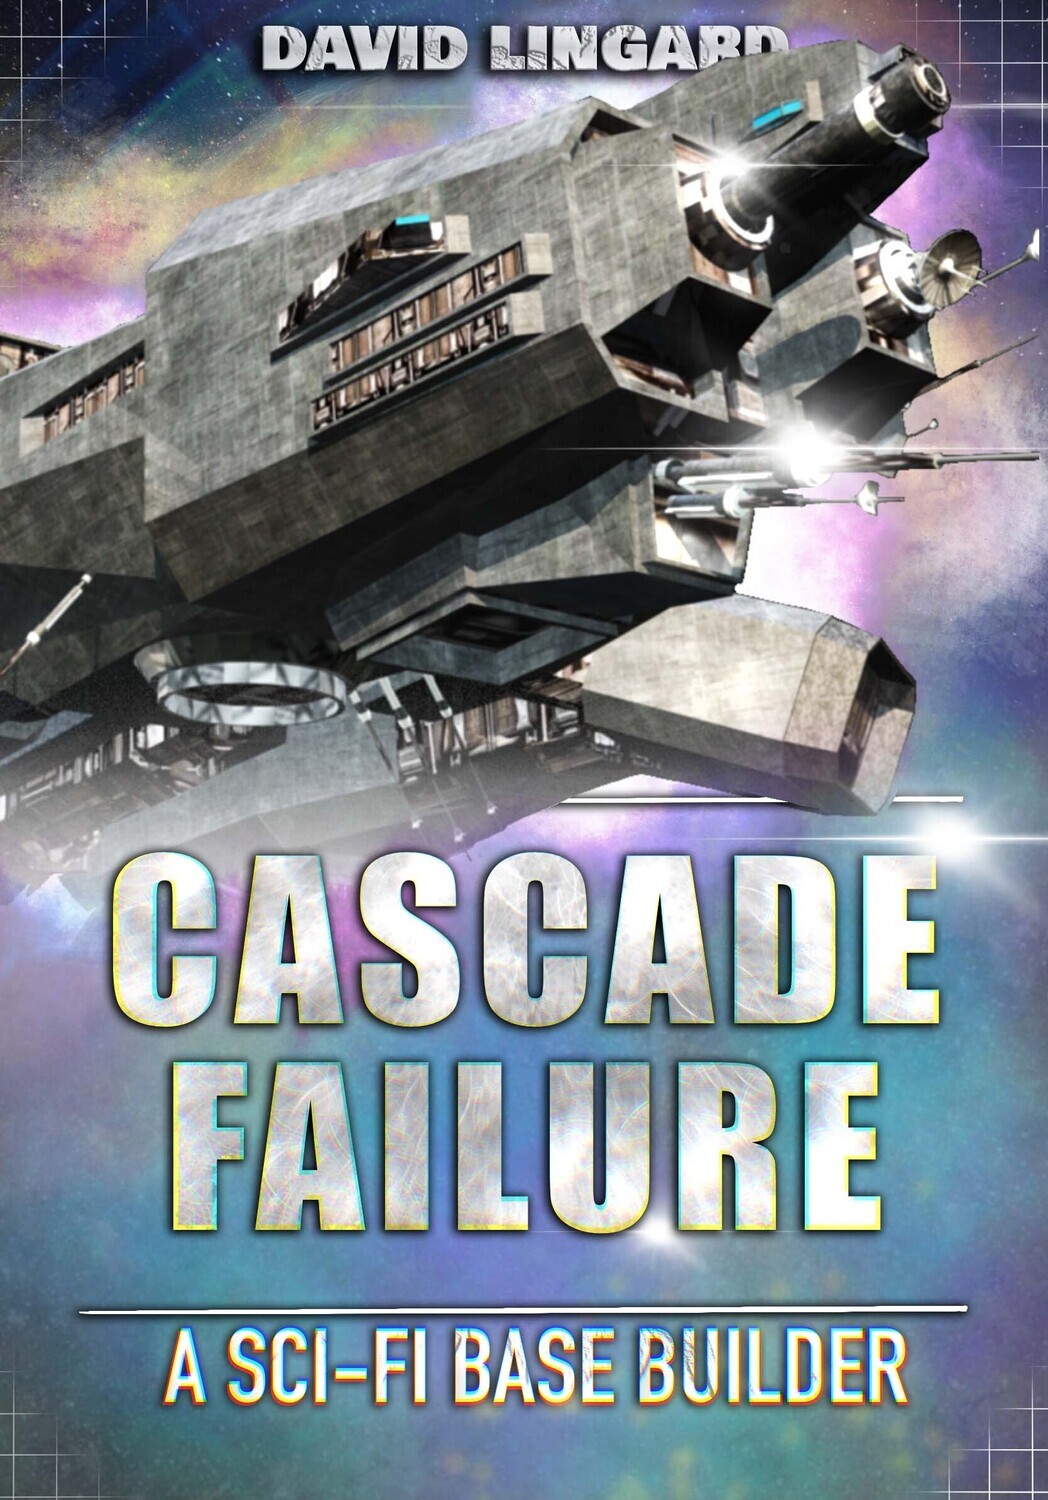 Paperback: Cascade Failure